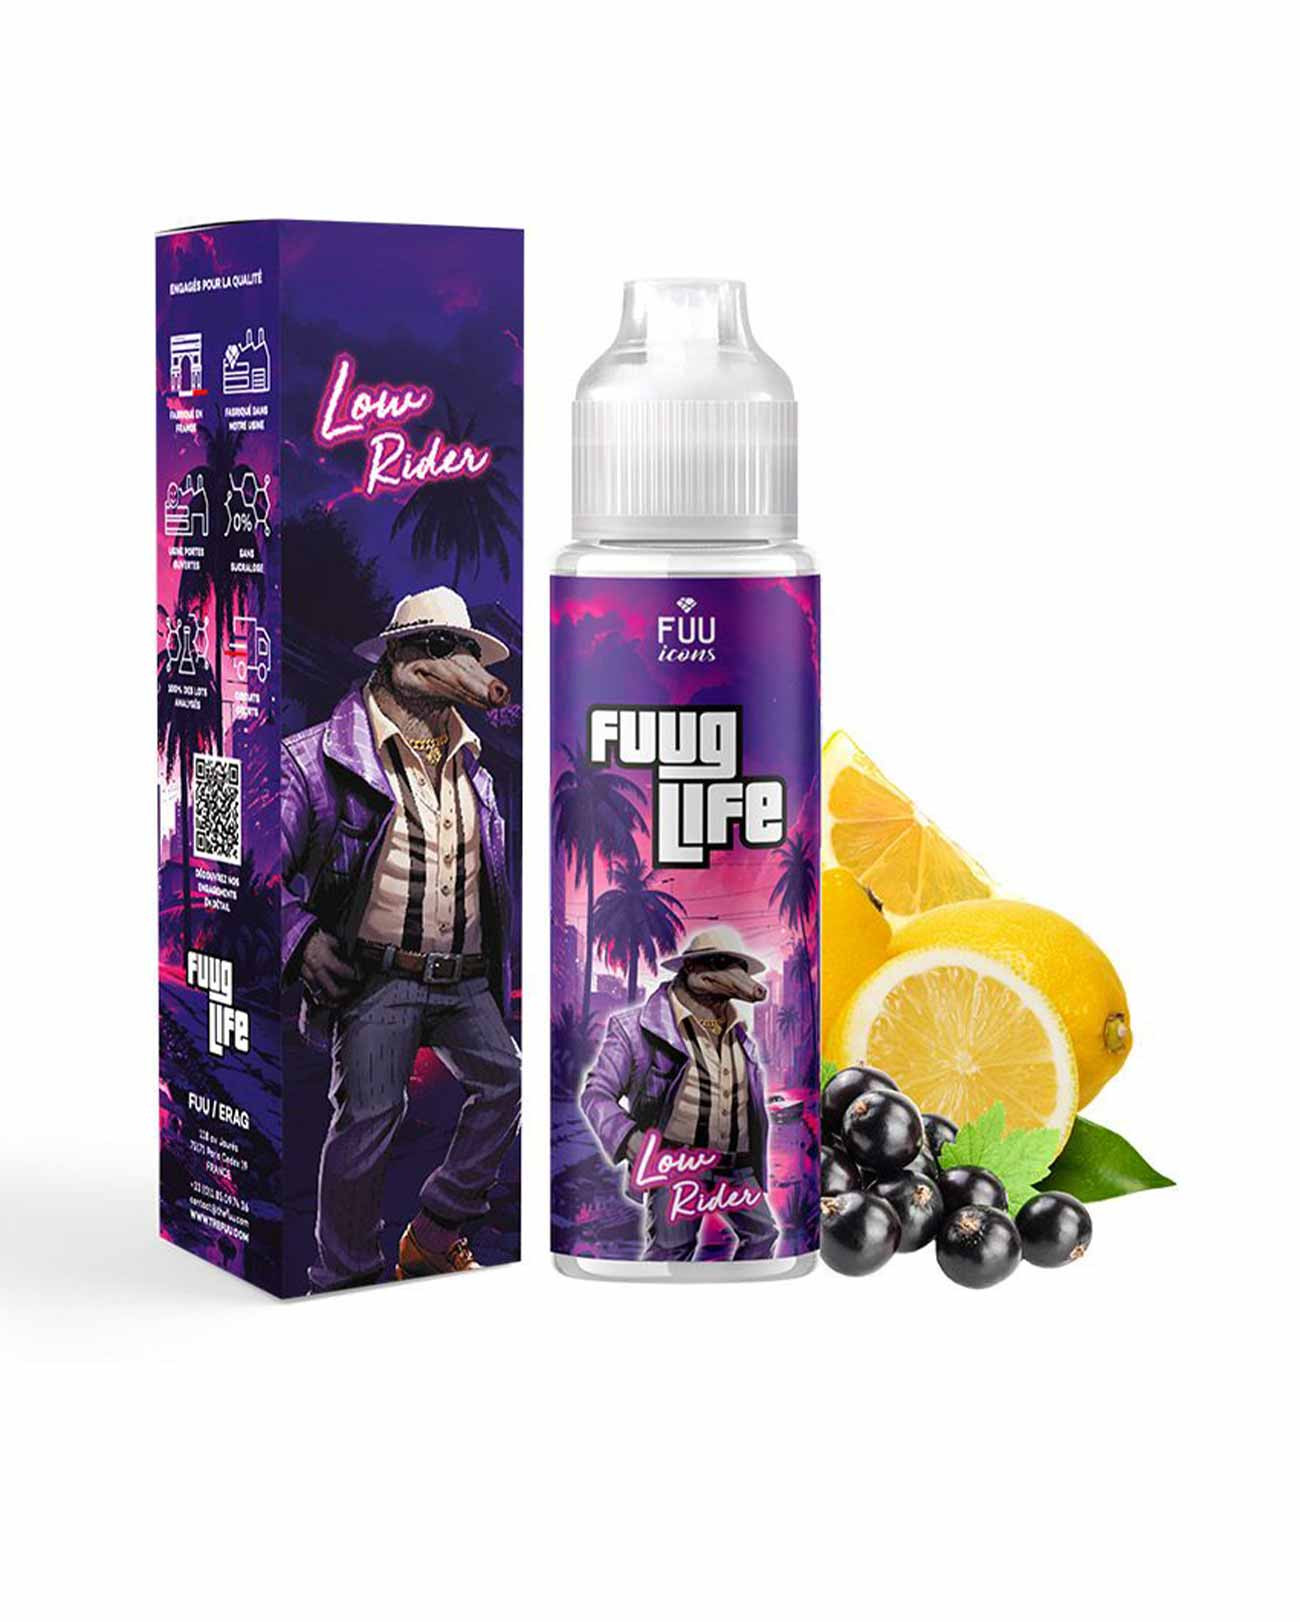 E-liquide 50 ml Fuug Life Low Rider de chez Fuu, saveur fraîche citron jaune et cassis